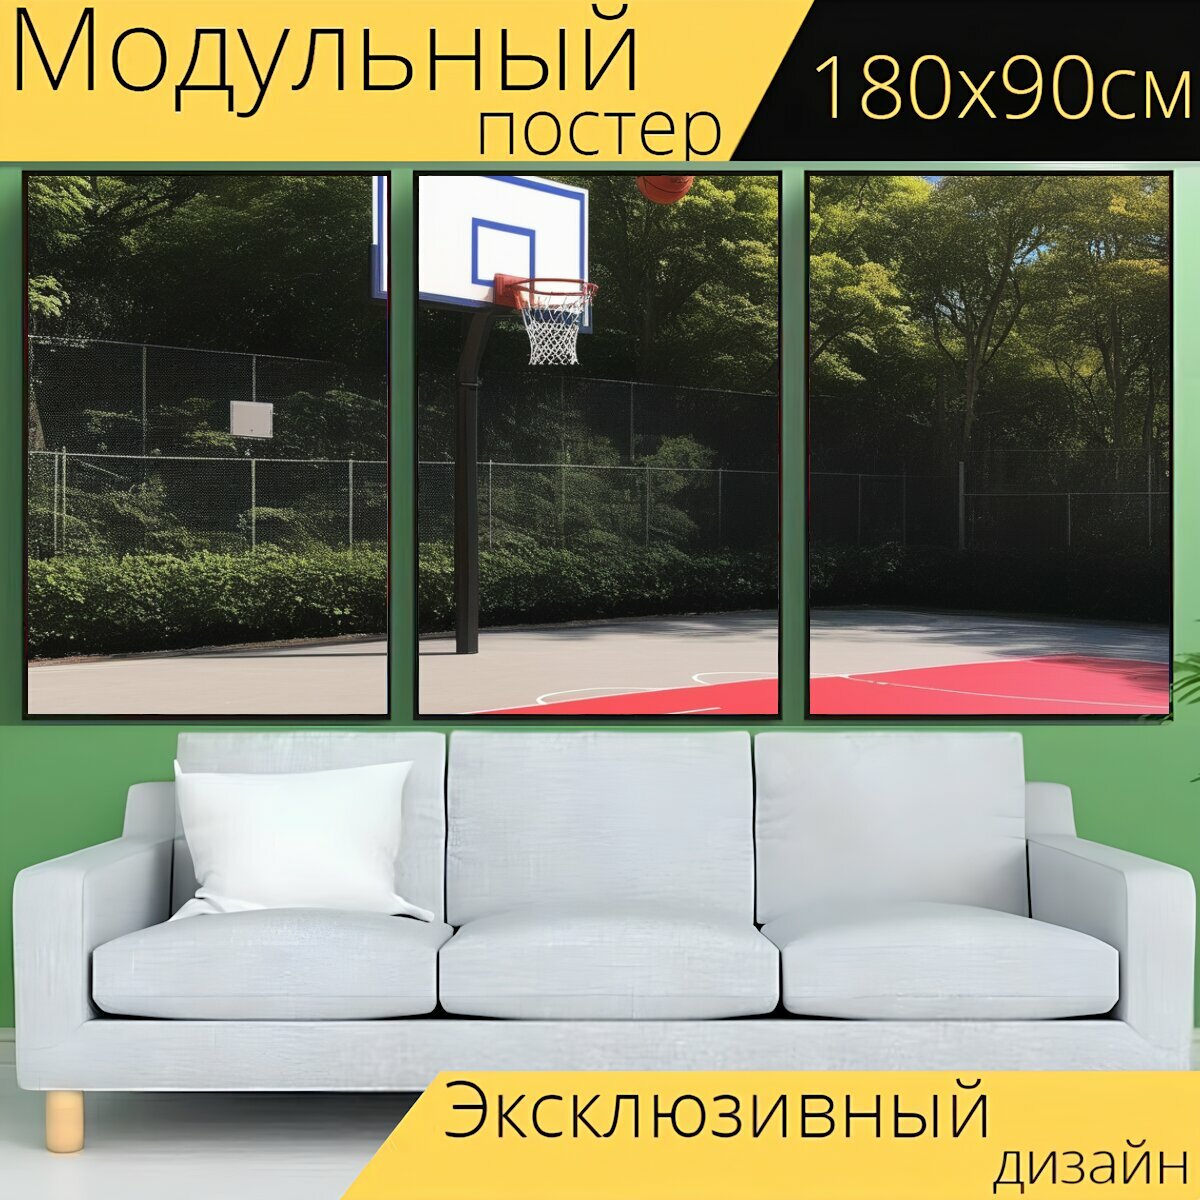 Модульный постер для любителей спорта "Спортивные игры, баскетбол, поле" 180 x 90 см. для интерьера на стену